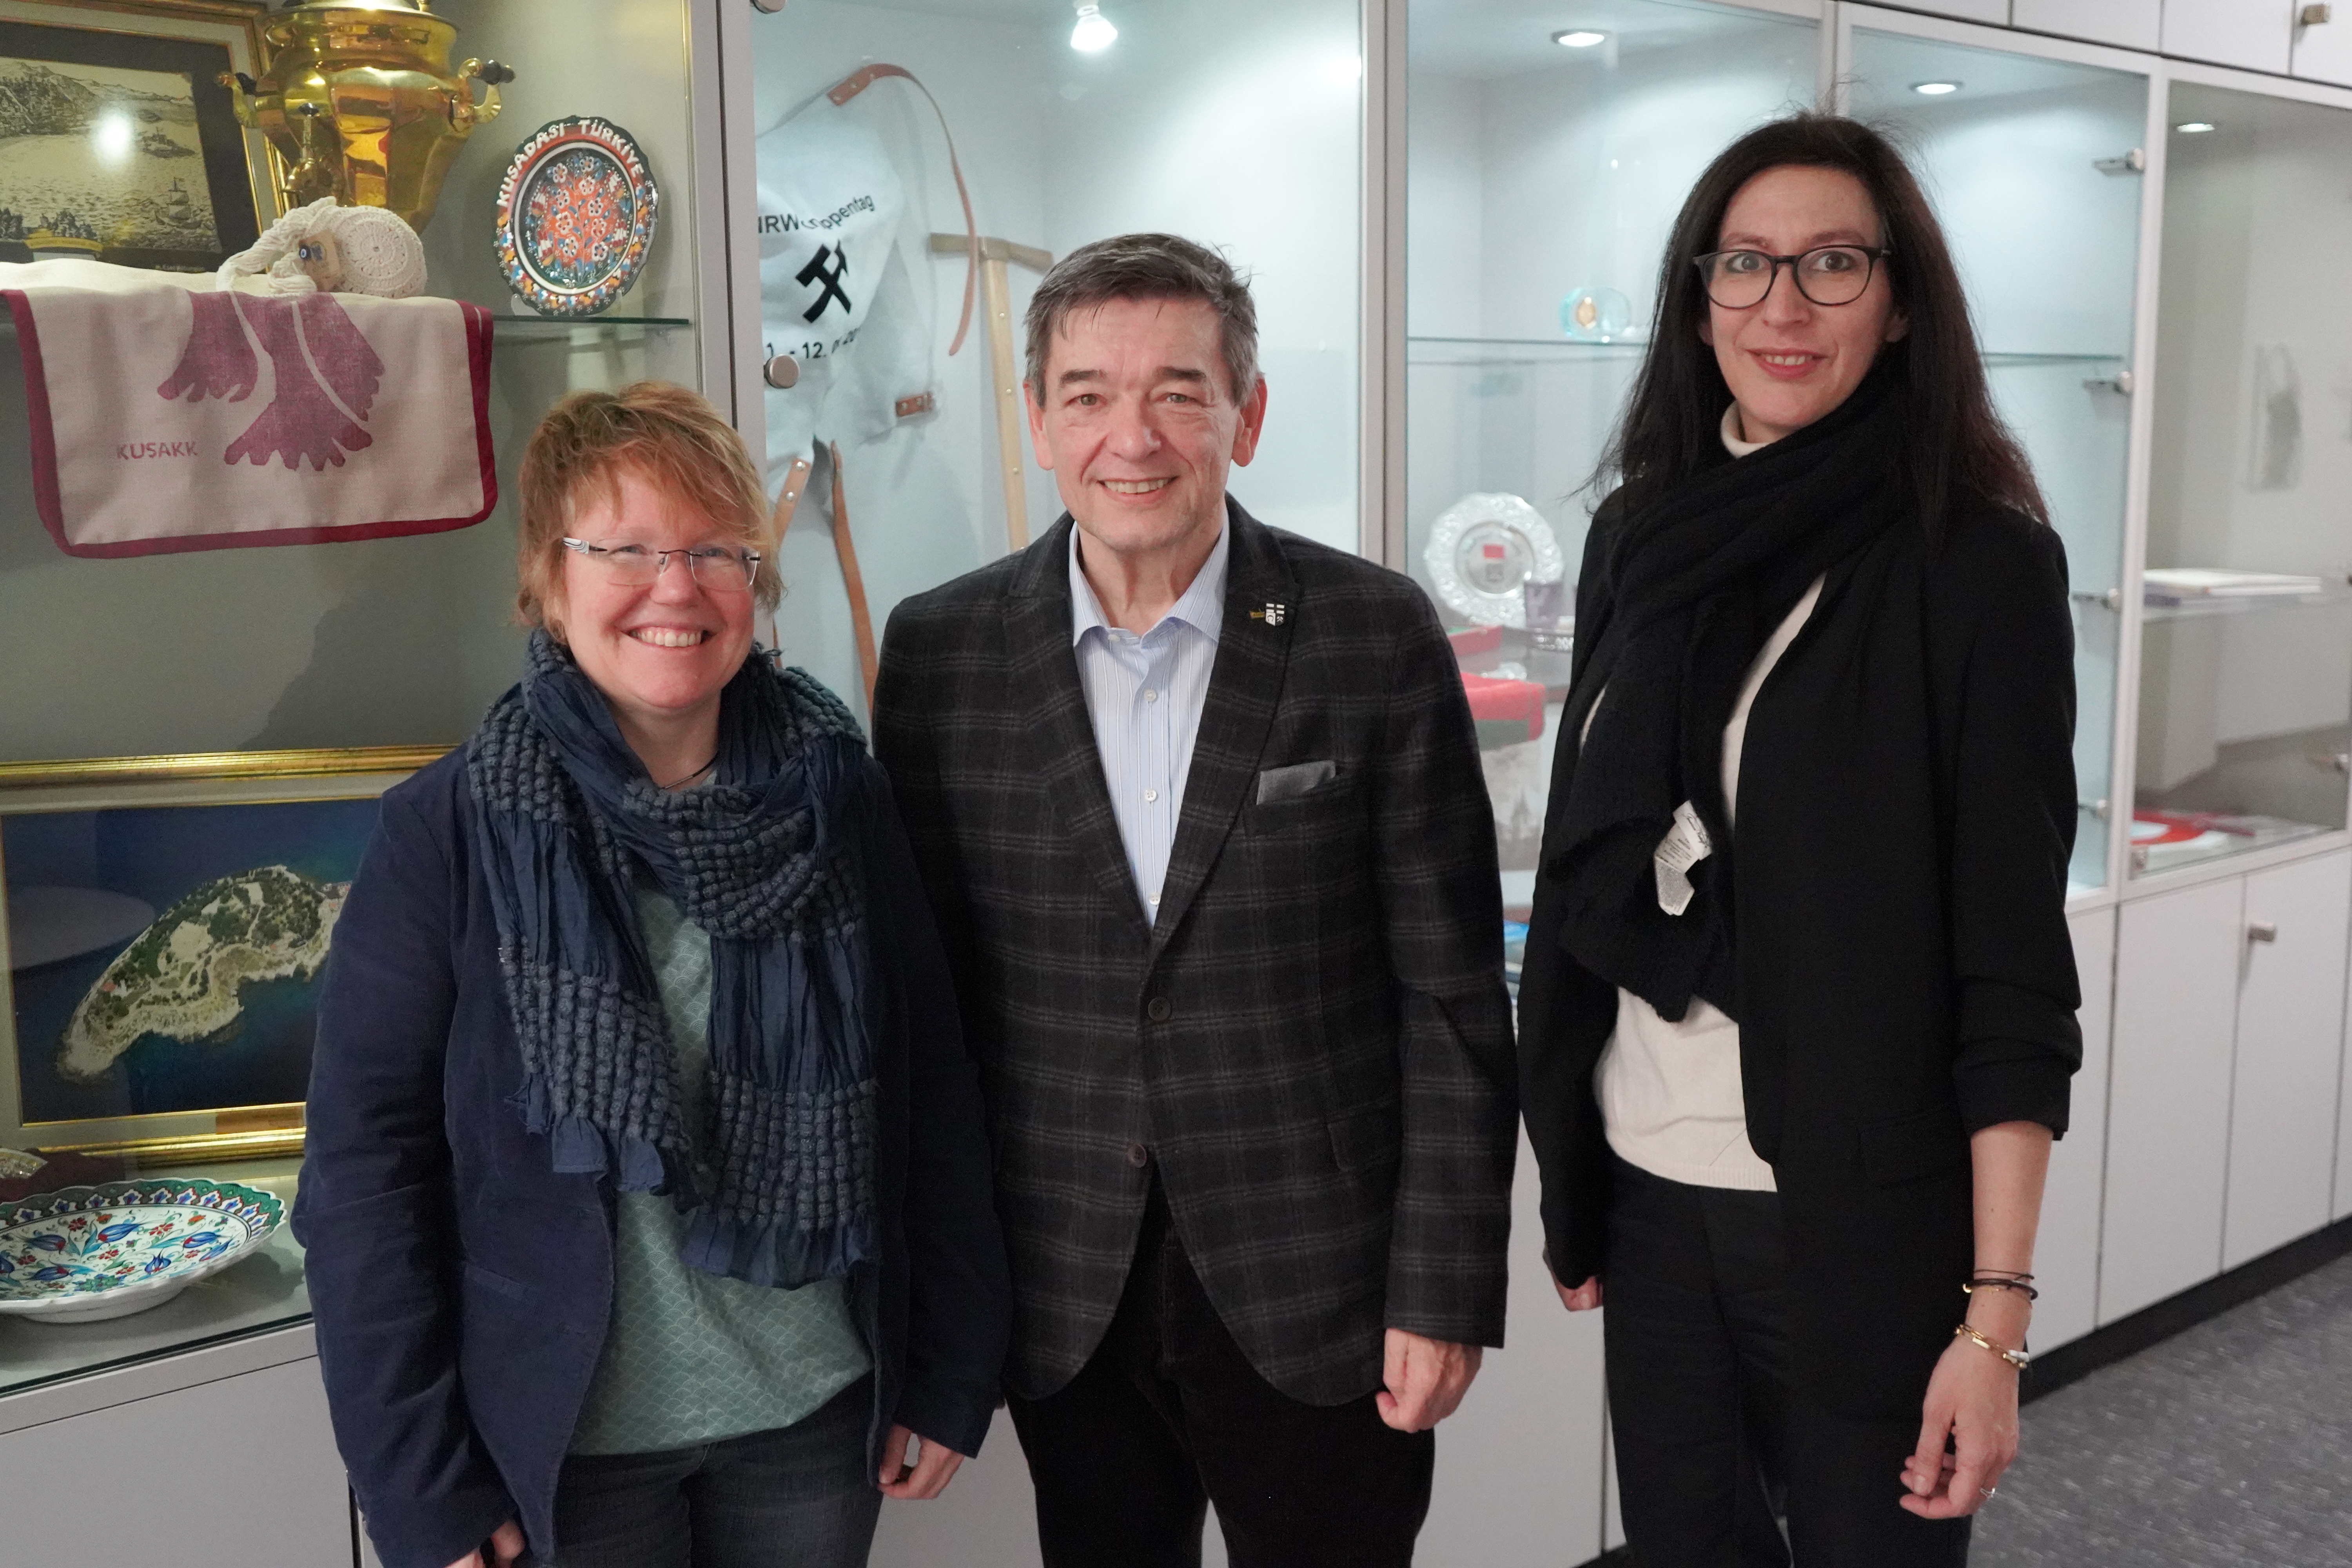 Bürgermeister-Jahresgespräch mit esm-Vertreterinnen - Daniela Kirschkowski und Julia Beckmann im Stadthaus zu Gast